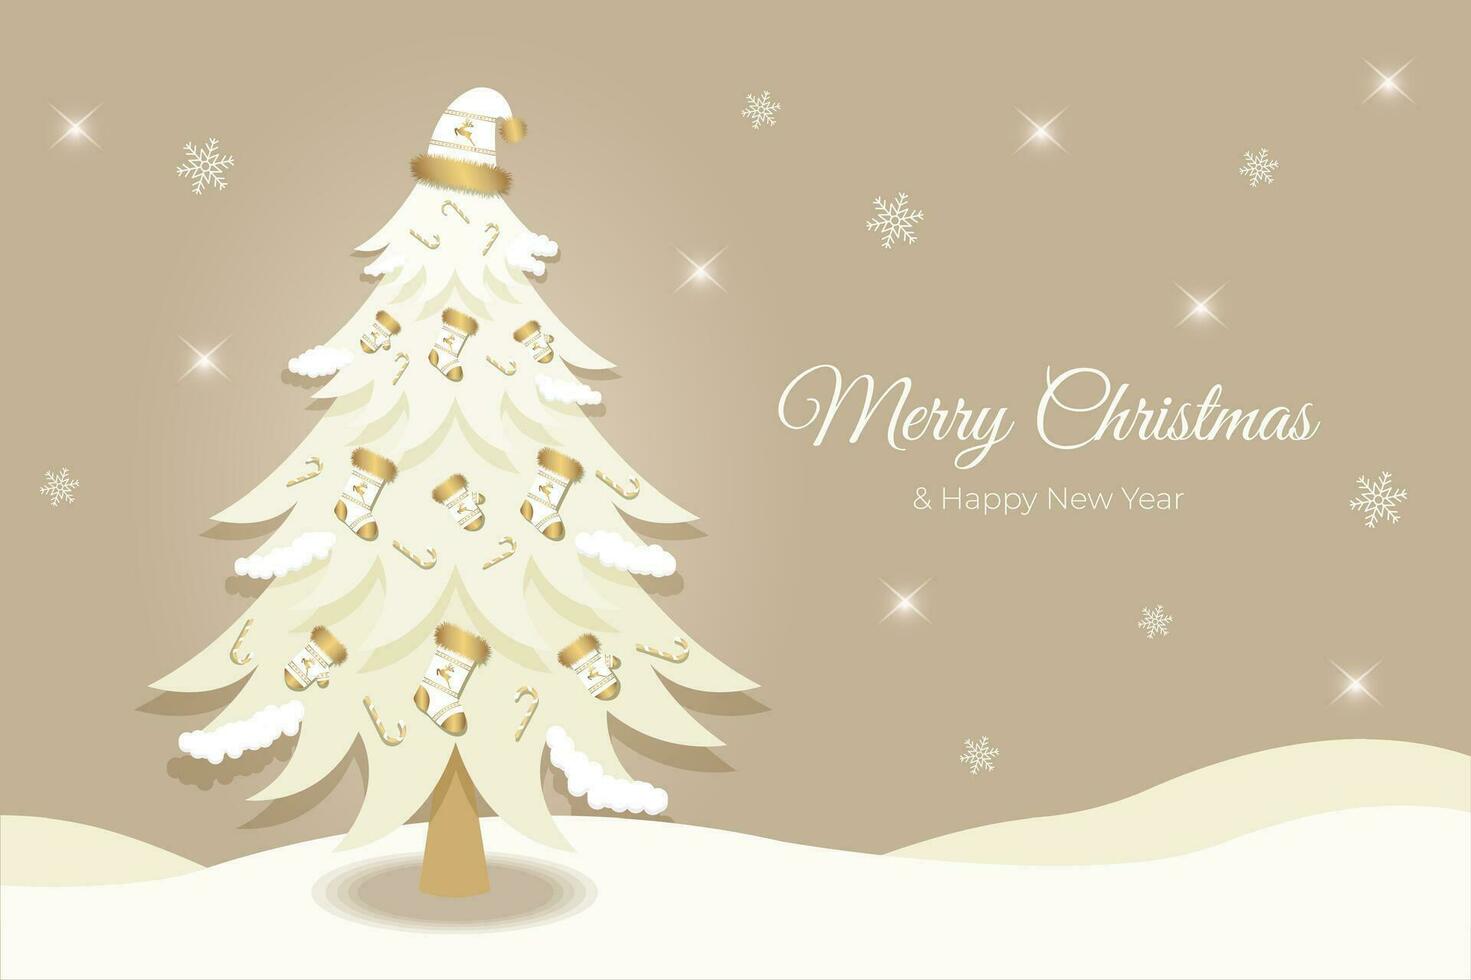 kerstmis, nieuw jaar groet kaart, uitnodiging met Kerstmis boom. speelgoed van laarzen, wanten, hoed, snoepjes en herten. vector illustratie.